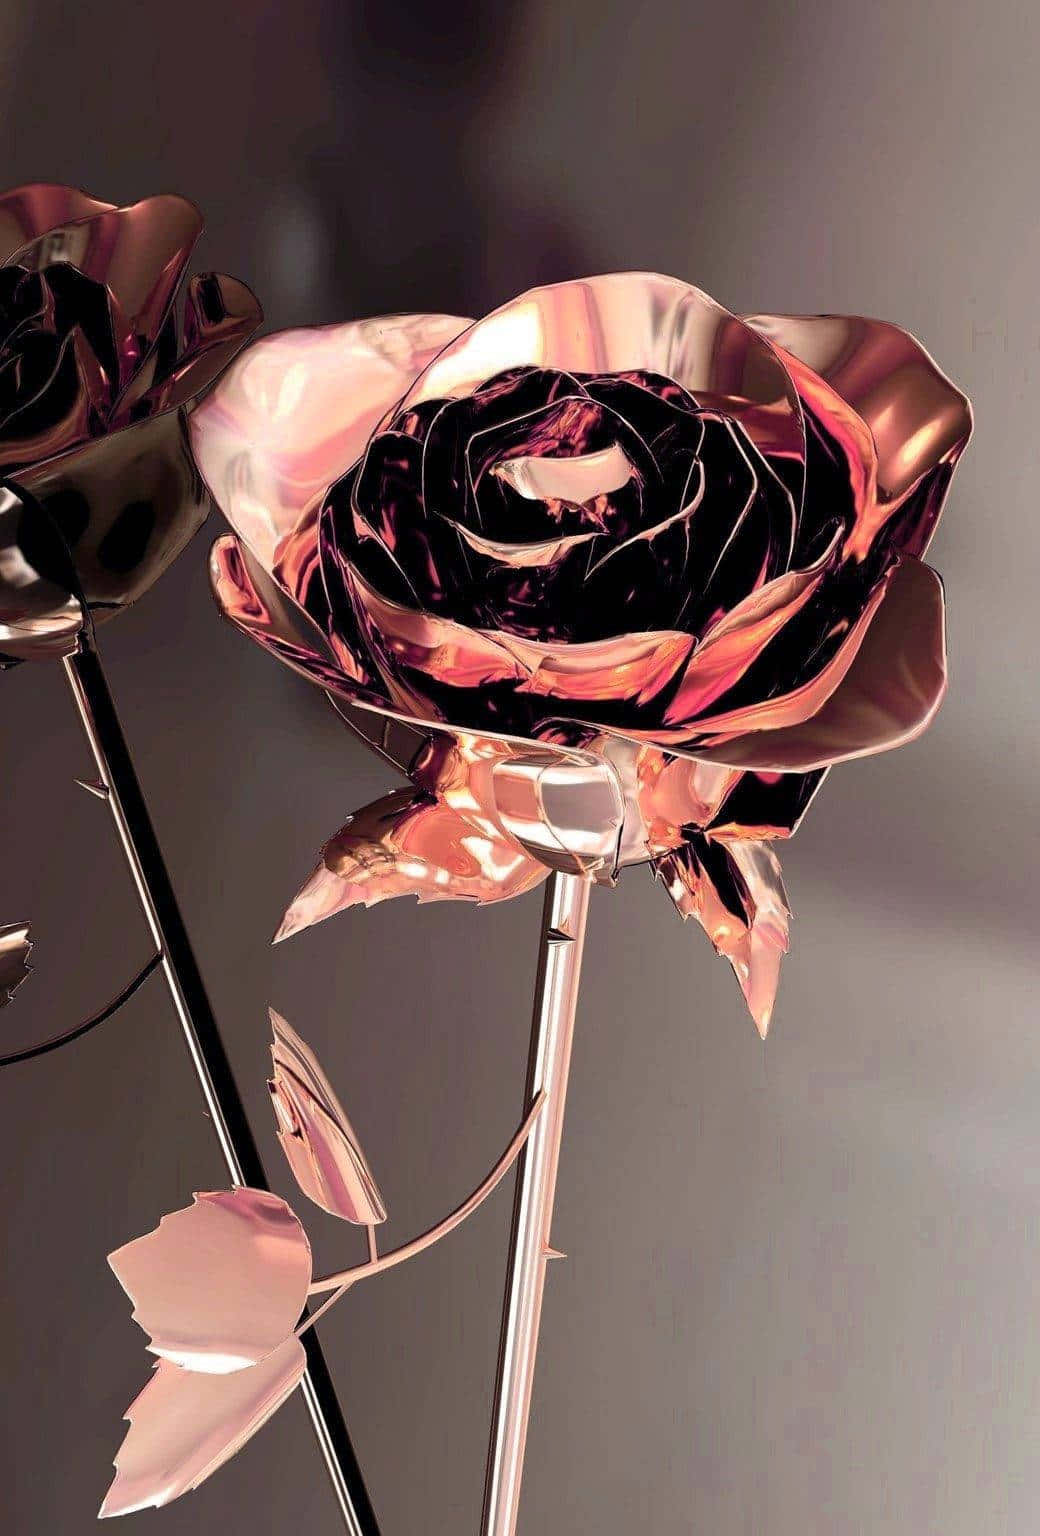 Tvåömtåliga Rosa Rosor - Perfekt För Någon Speciell. Wallpaper